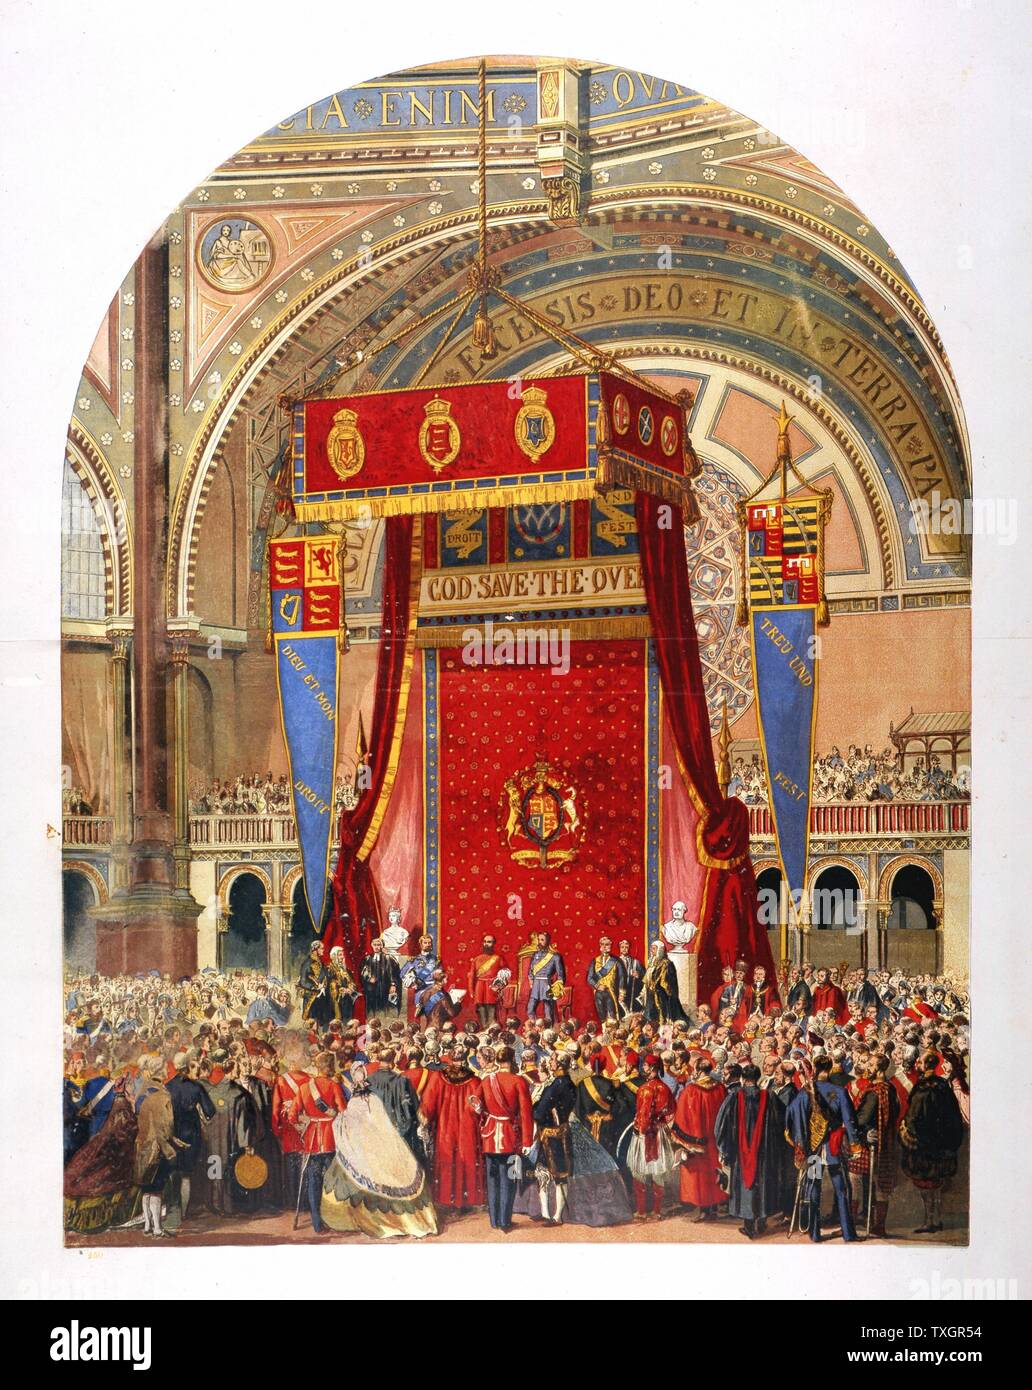 Ouverture de l'Exposition internationale de 1862 dans le Palais de Cristal par le cousin de la reine Victoria, George, duc de Cambridge Londres 1862 Chromolithographie Banque D'Images